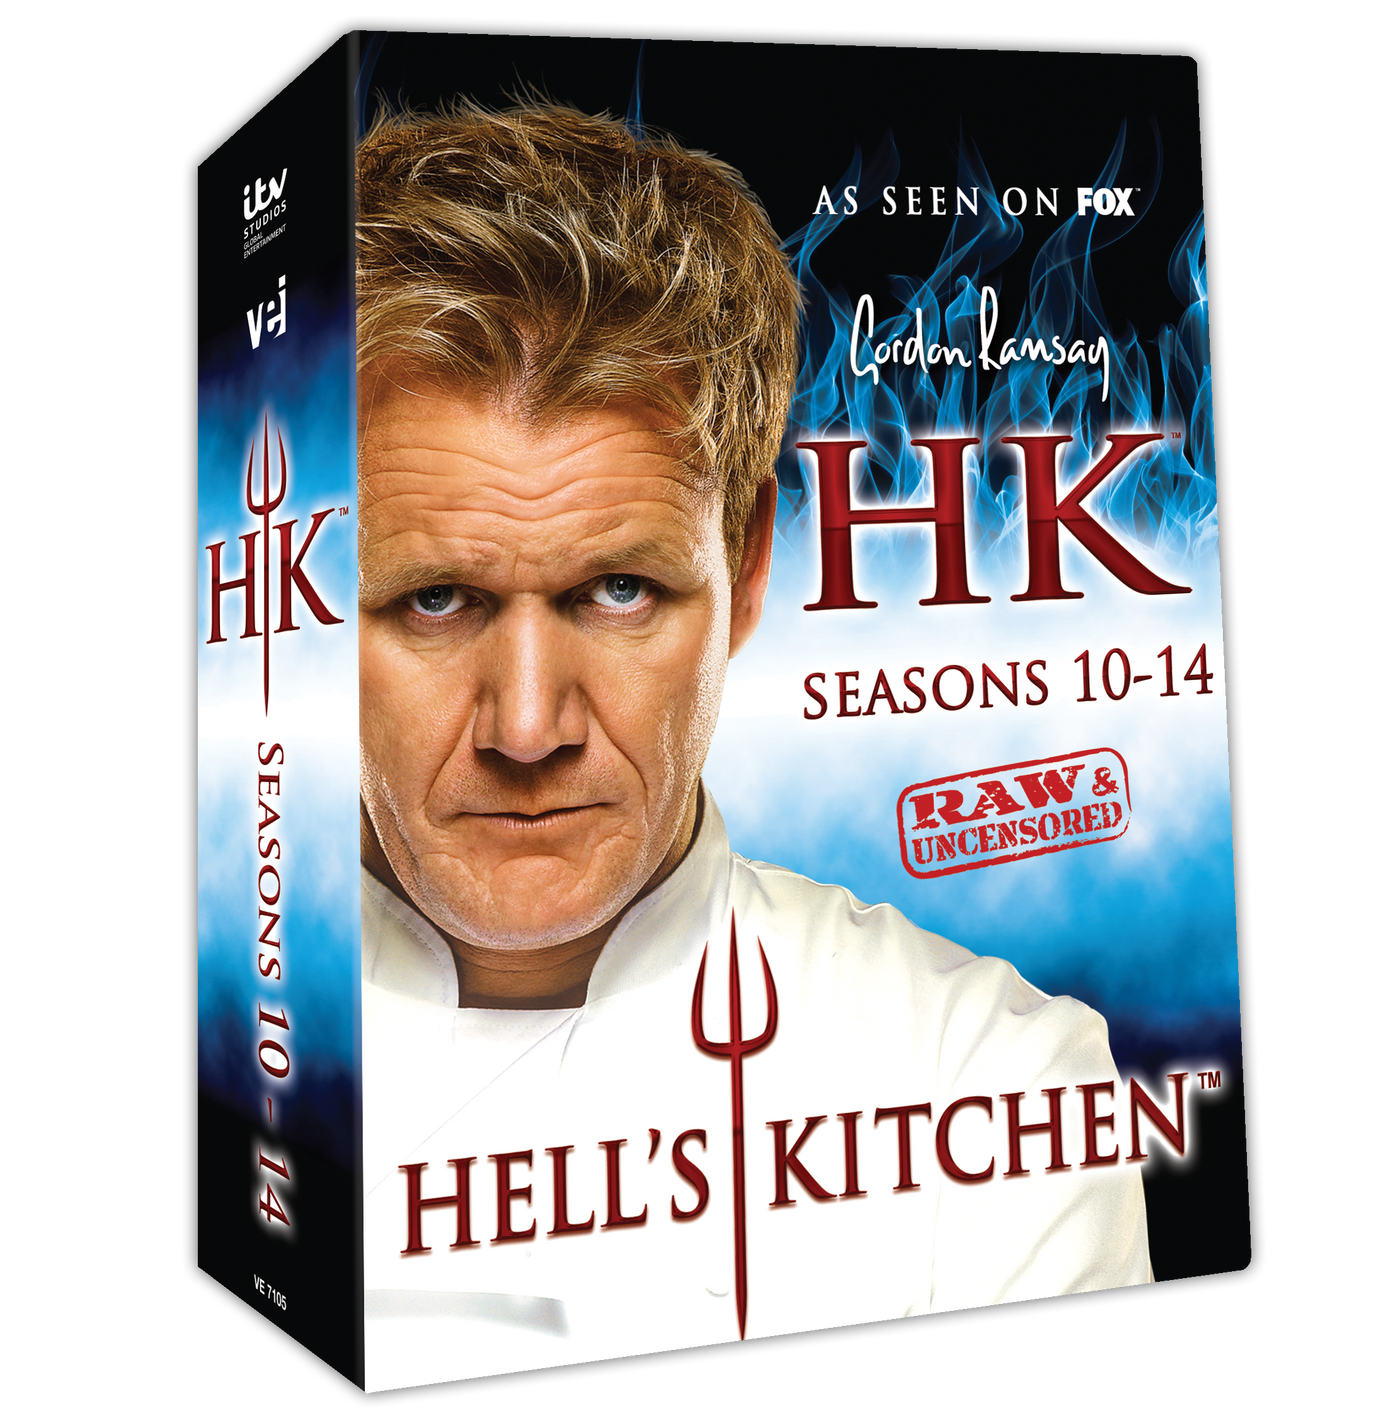 Hells Kitchen Dvd Set All About Kitchen Set